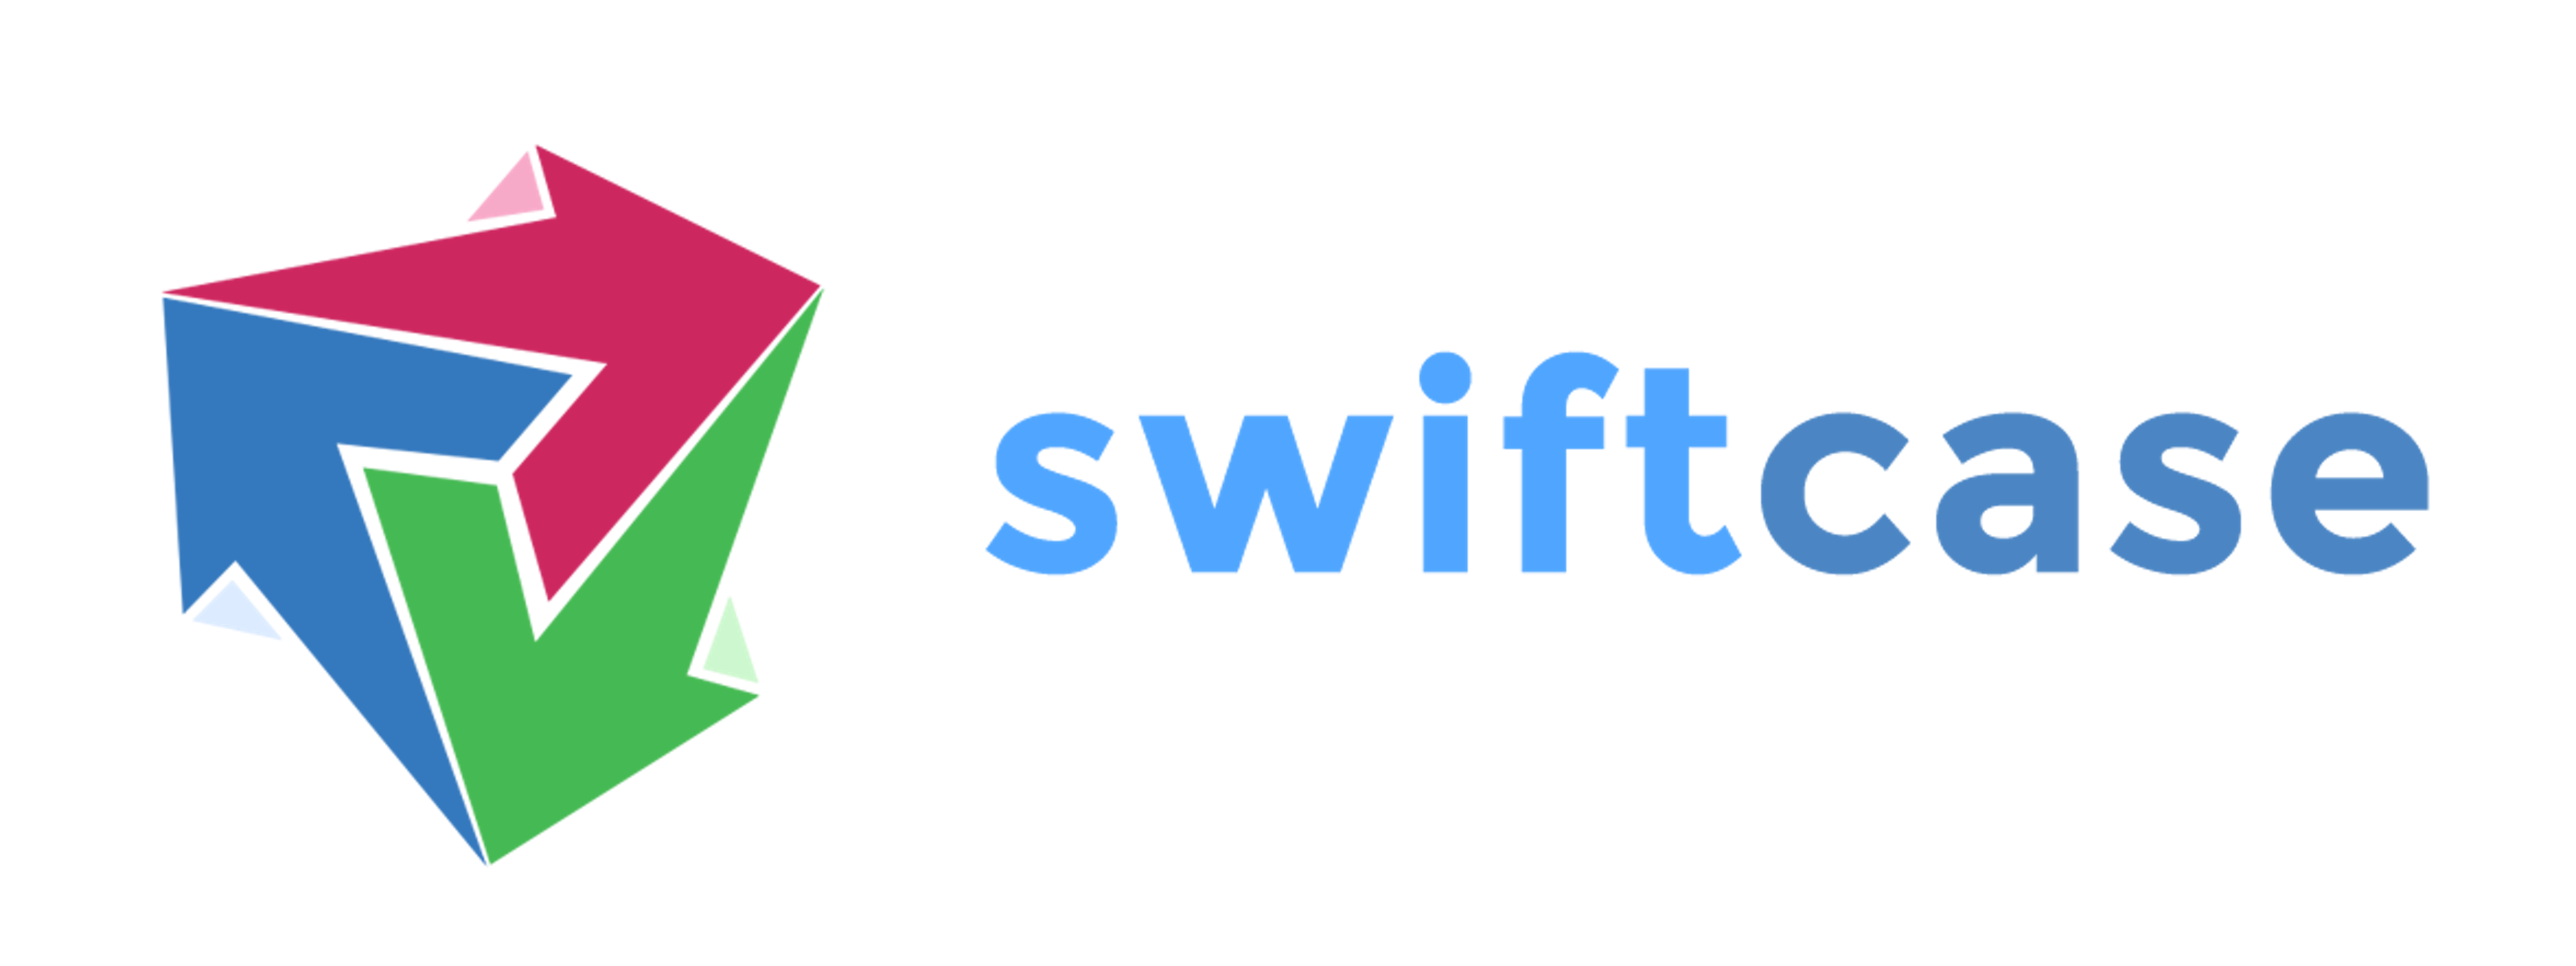 SwiftCase Logo